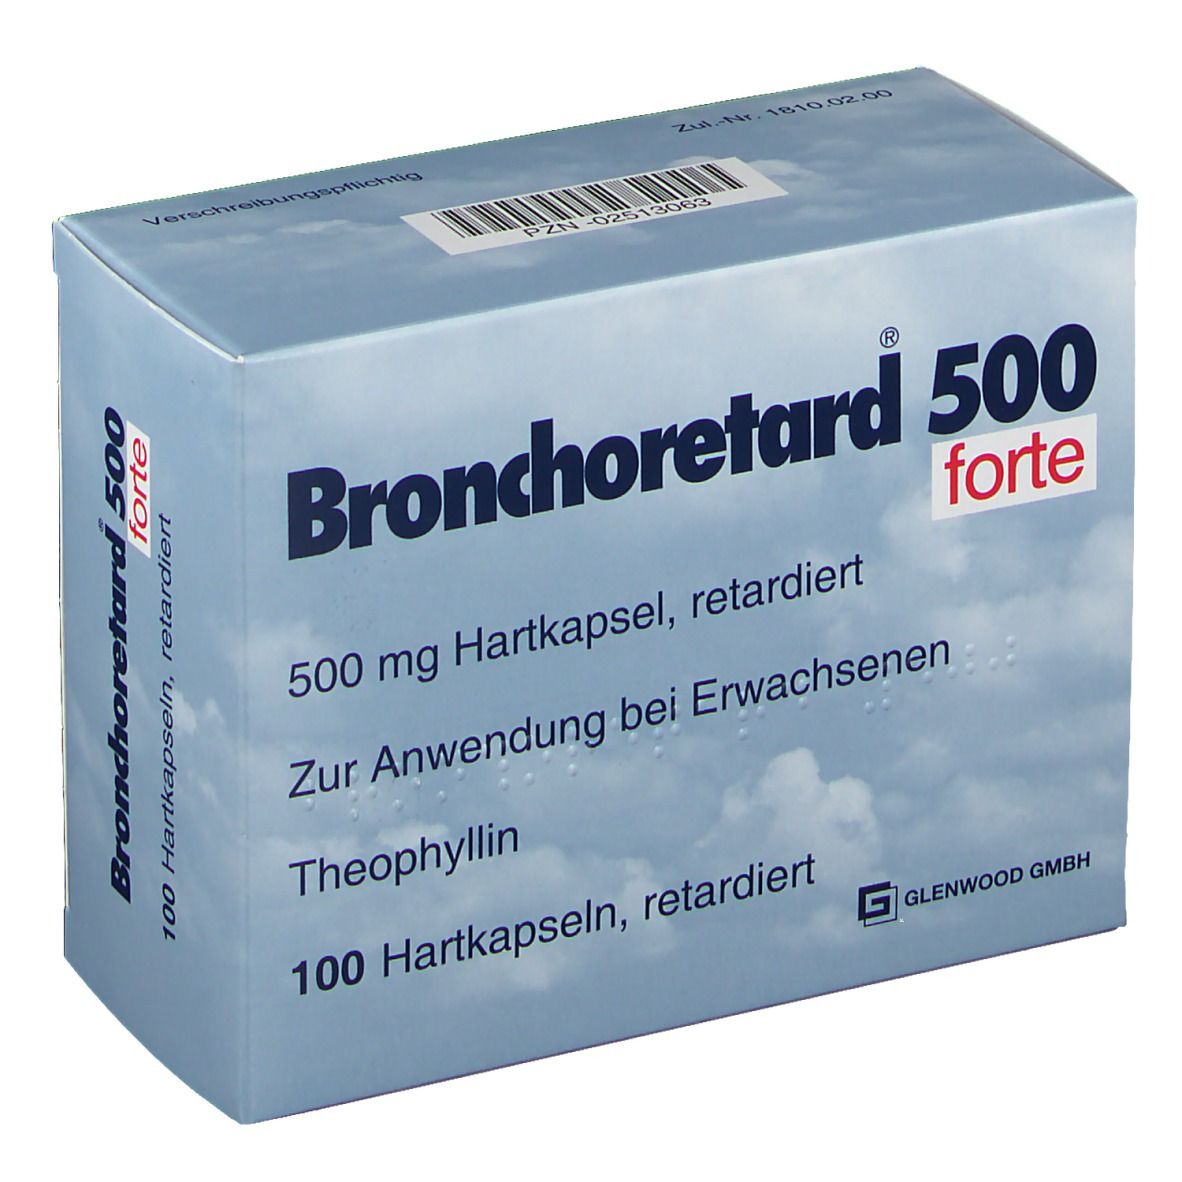 Bronchoretard® 500 forte